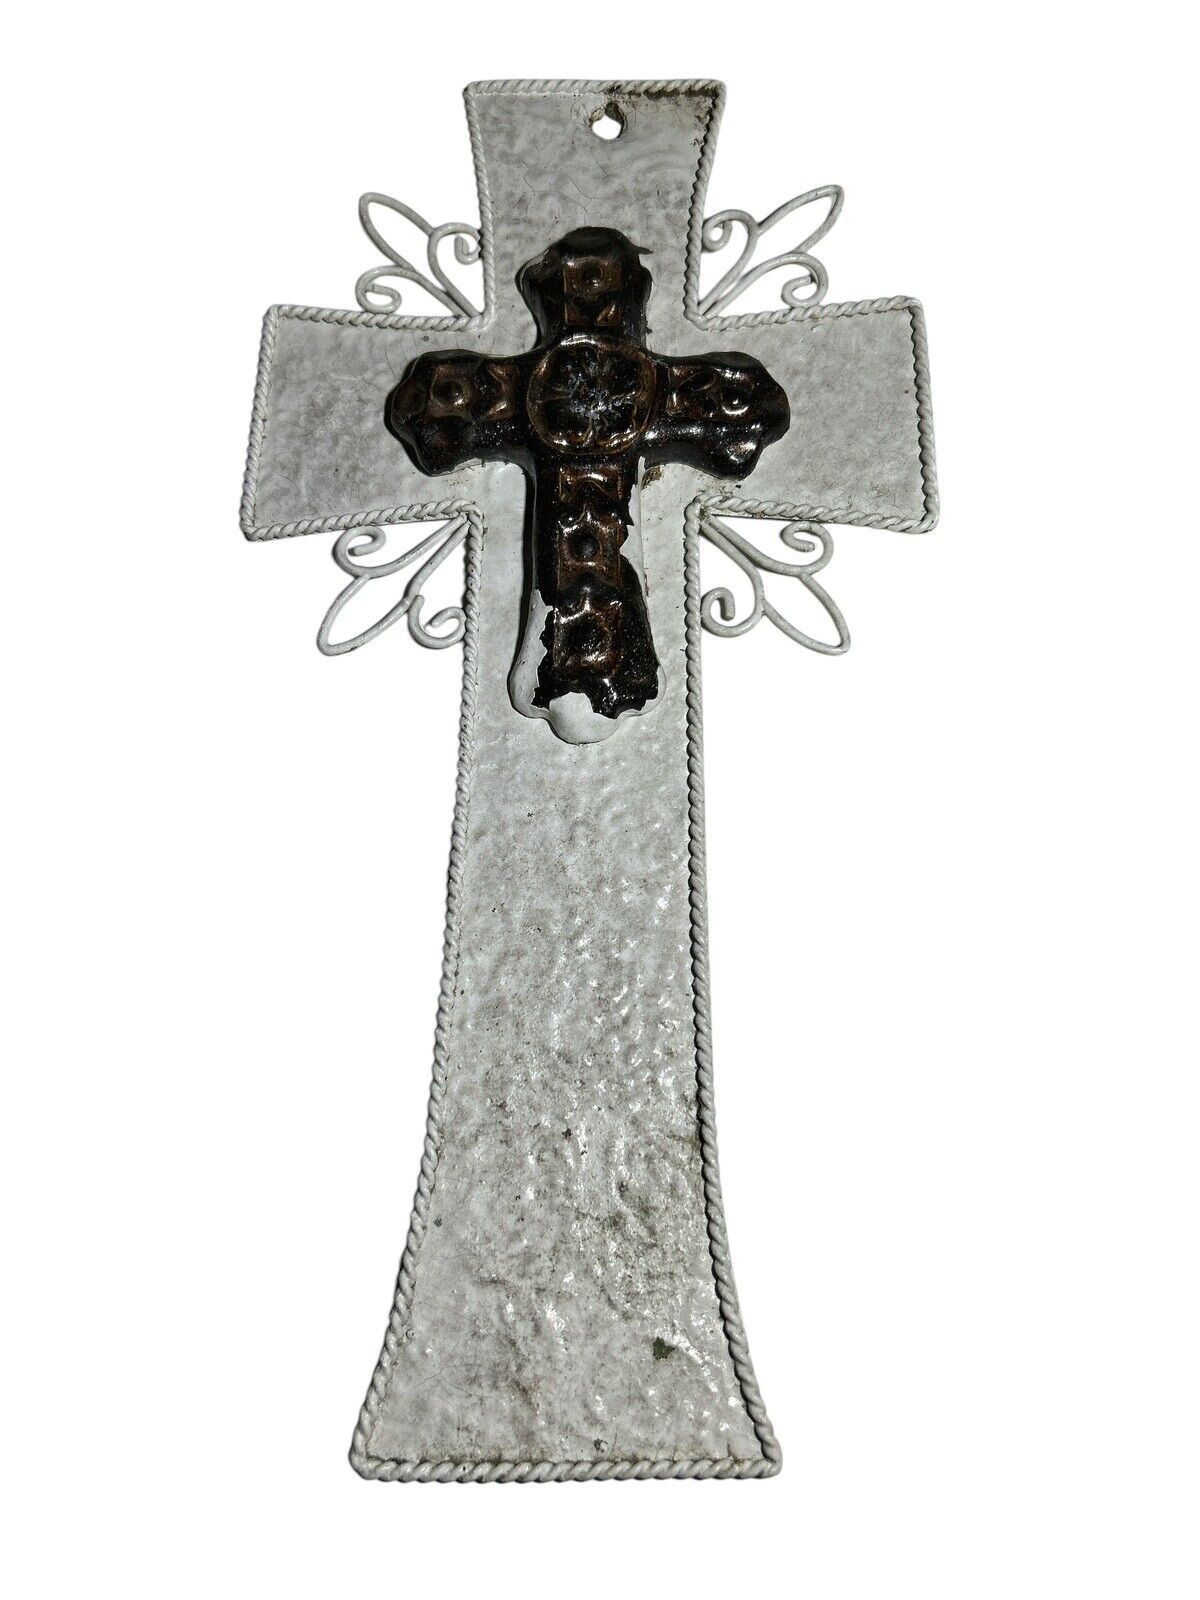 Western Country Americana Cross Crucifix Rustic Design Metal White 14x7” Antique